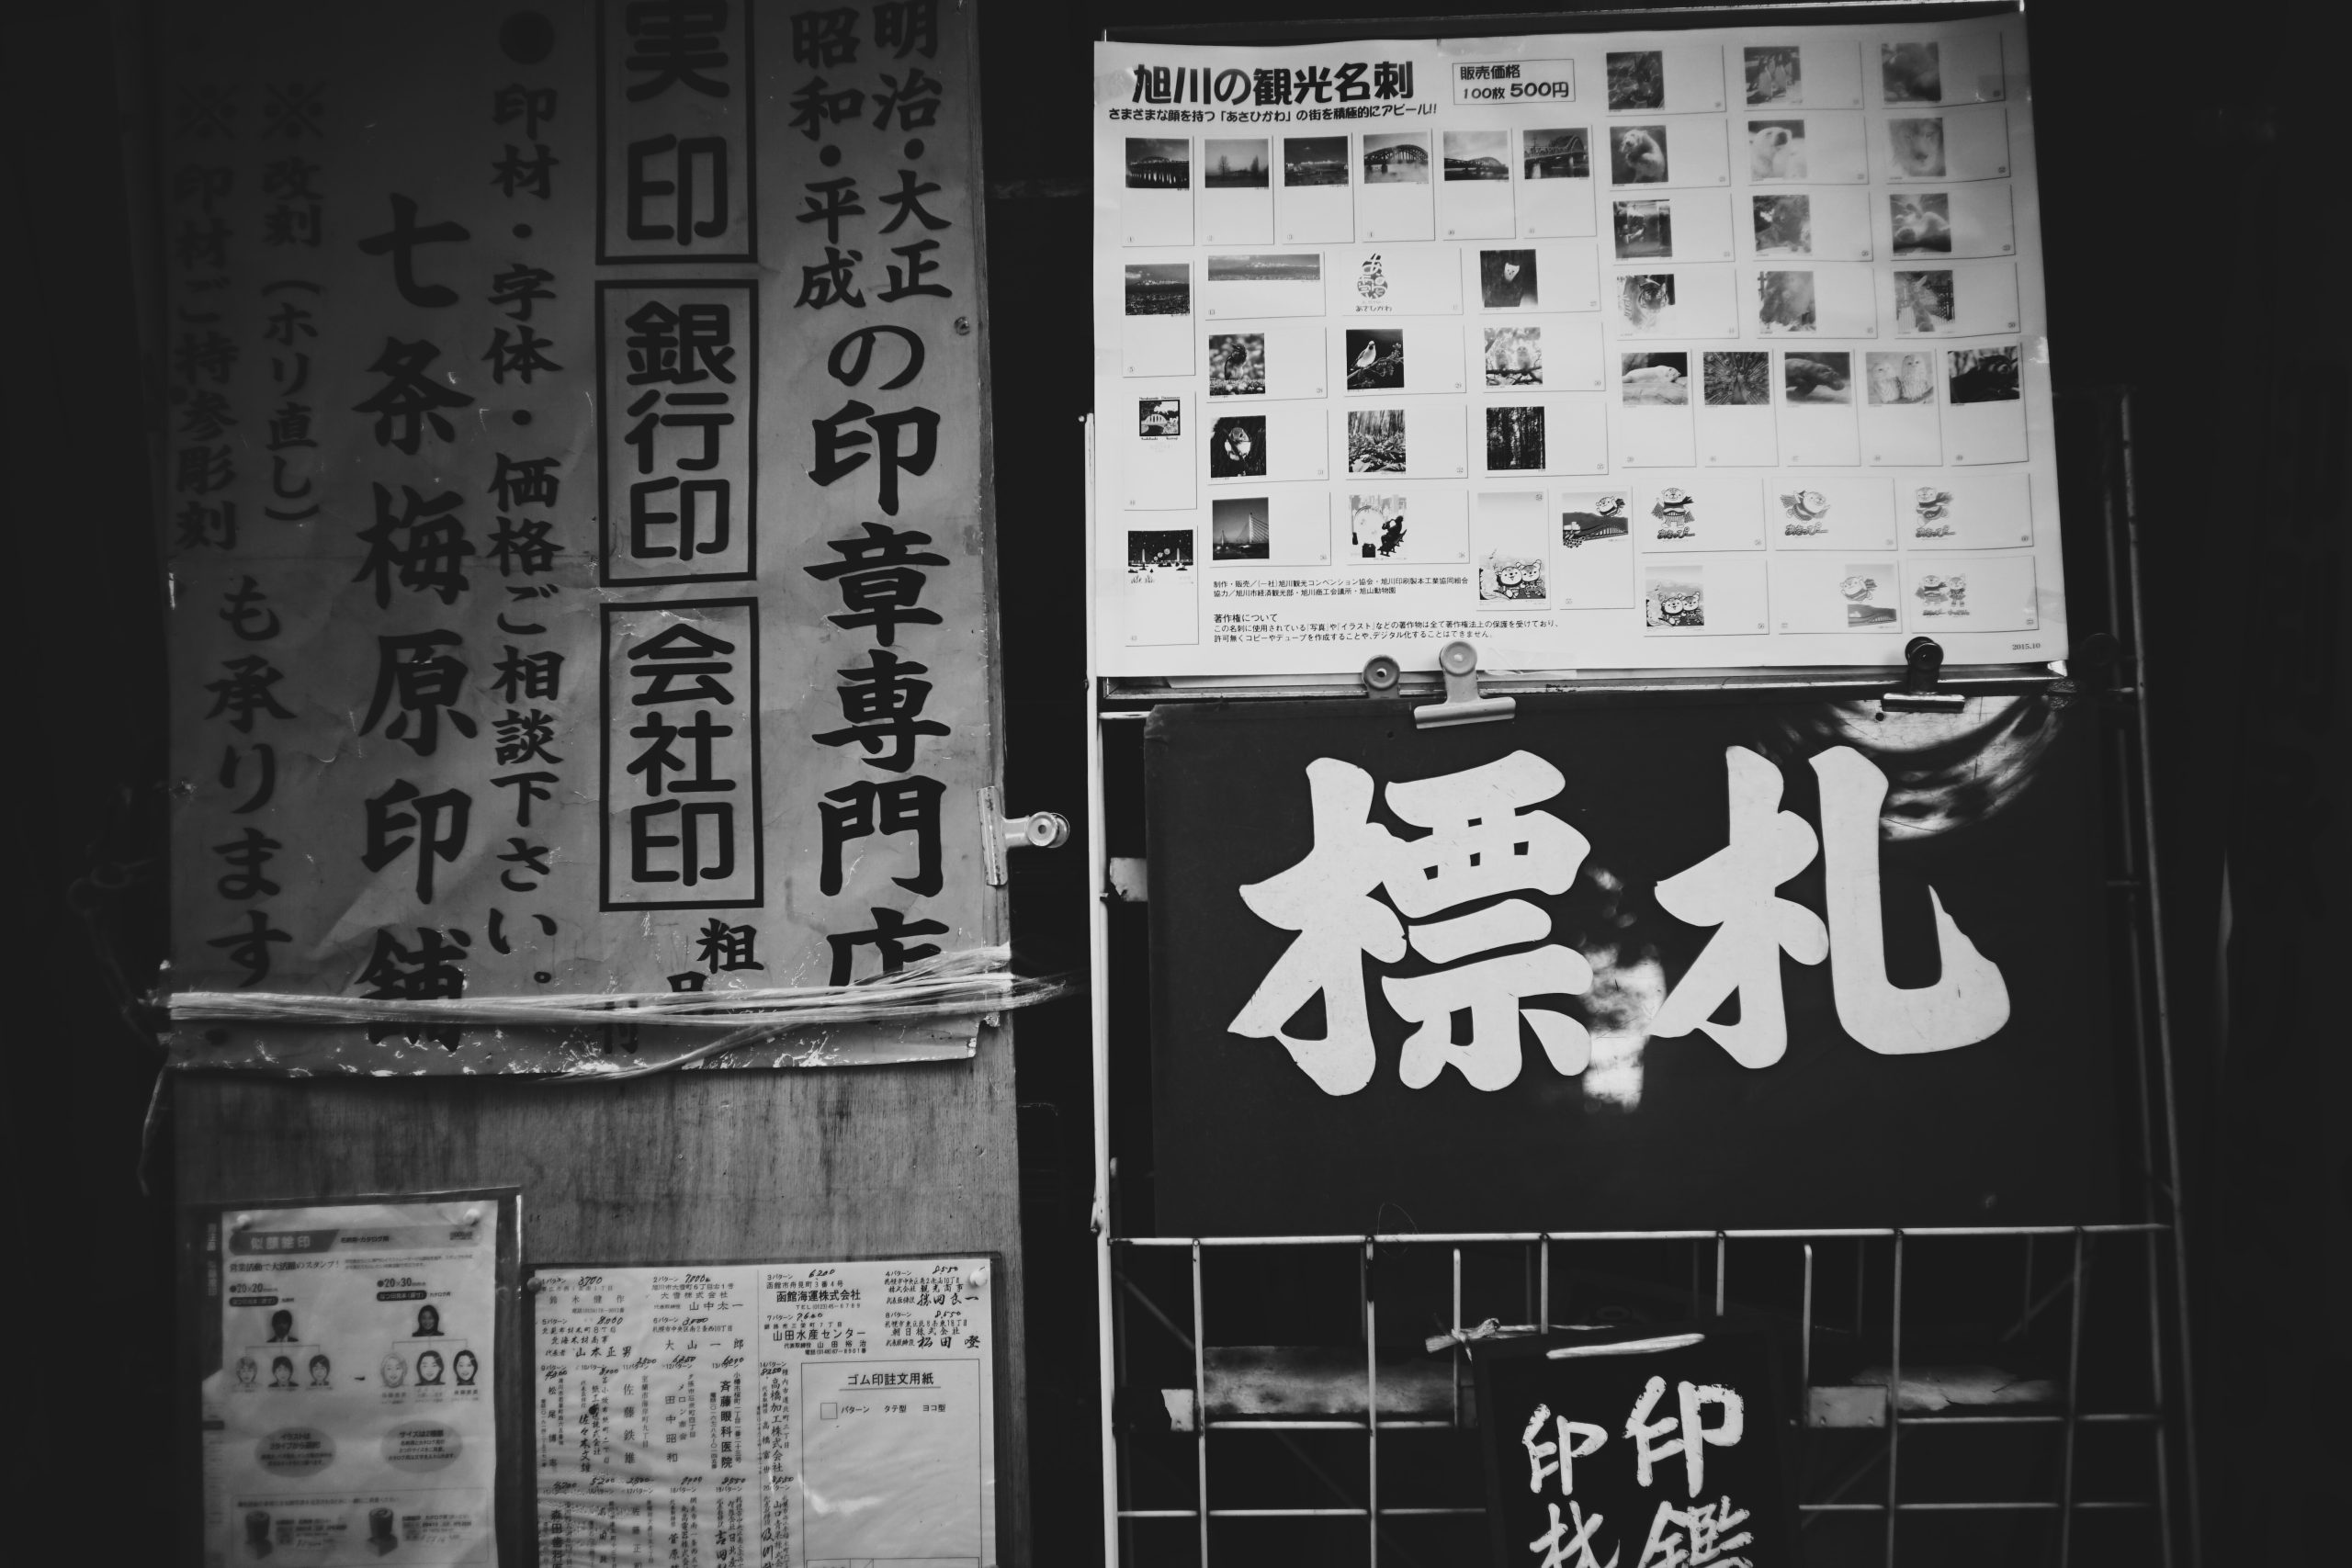 日语海报的黑白图片